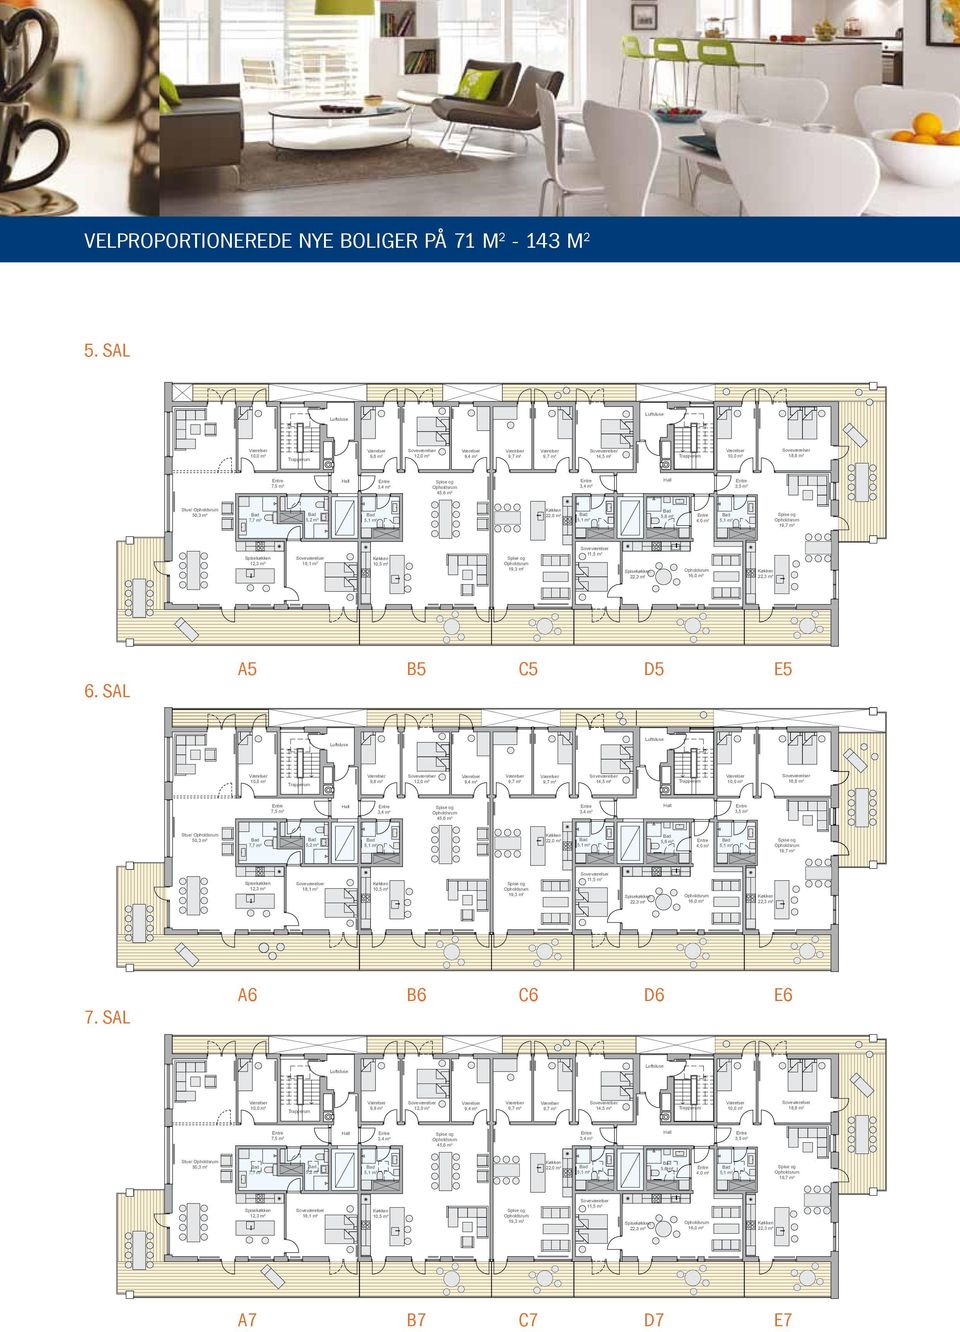 sal A5 B5 C5 D5 E5 7,5 m² 4 Stue/ 50,3 m² 7,7 m² 5,2 m² 1 12,3 m² 18,1 m²